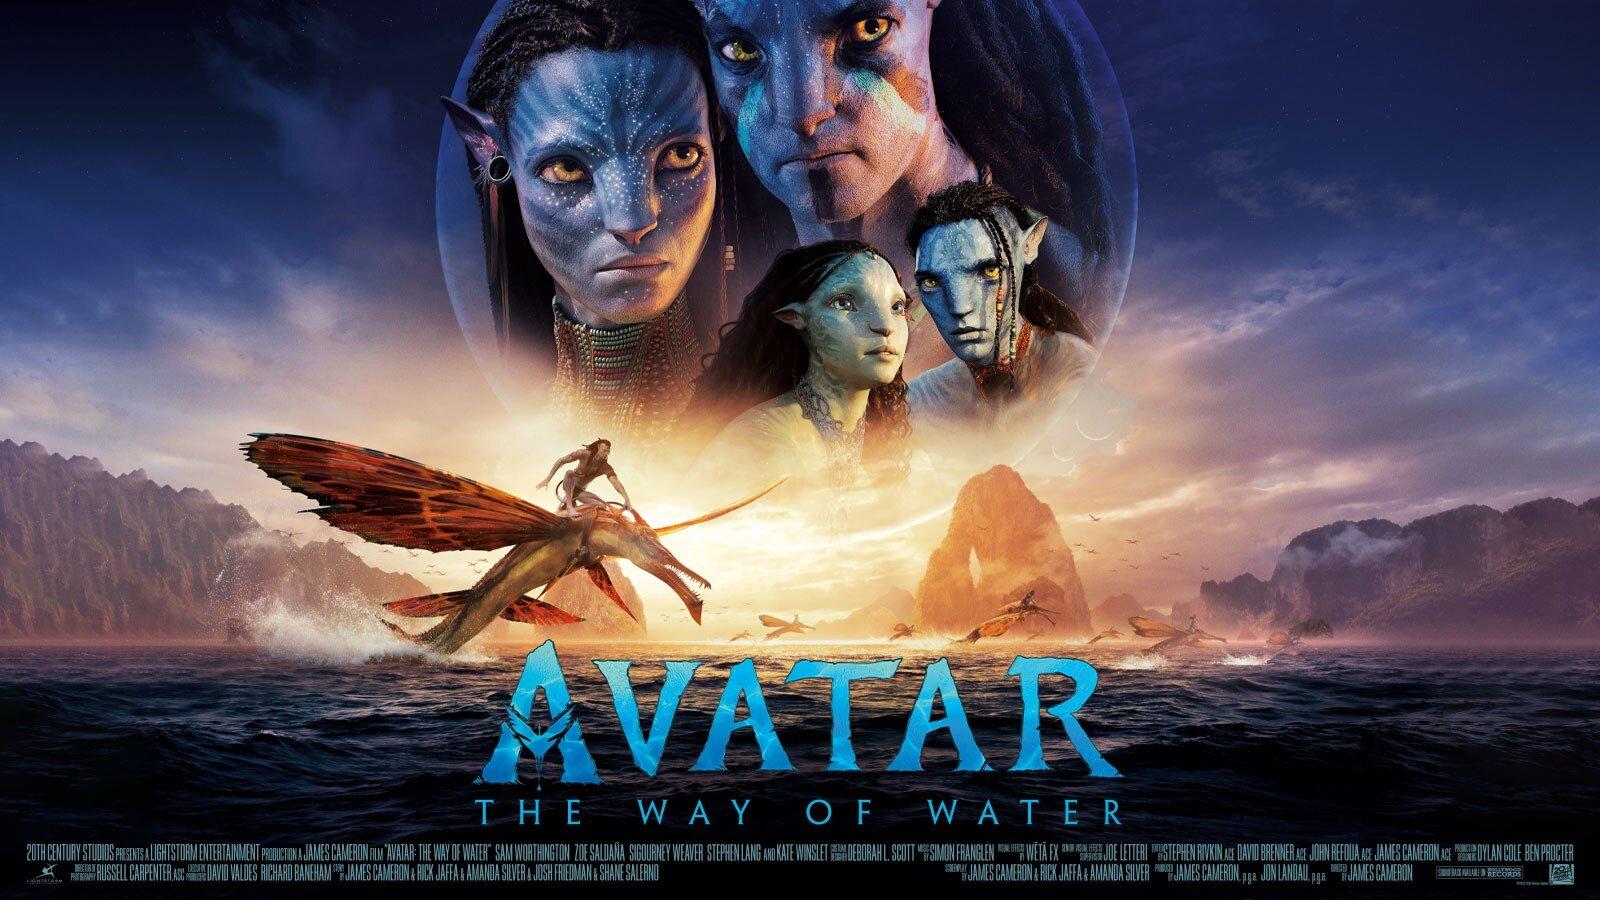 Avatar thống trị Bắc Mỹ: Avatar là bộ phim đình đám do James Cameron sản xuất, đem lại cho khán giả nhiều cảm xúc trái chiều. Đứng đầu doanh thu phòng vé tại Bắc Mỹ trong một thời gian dài, Avatar đã chinh phục trái tim của hàng triệu người hâm mộ trên toàn thế giới.